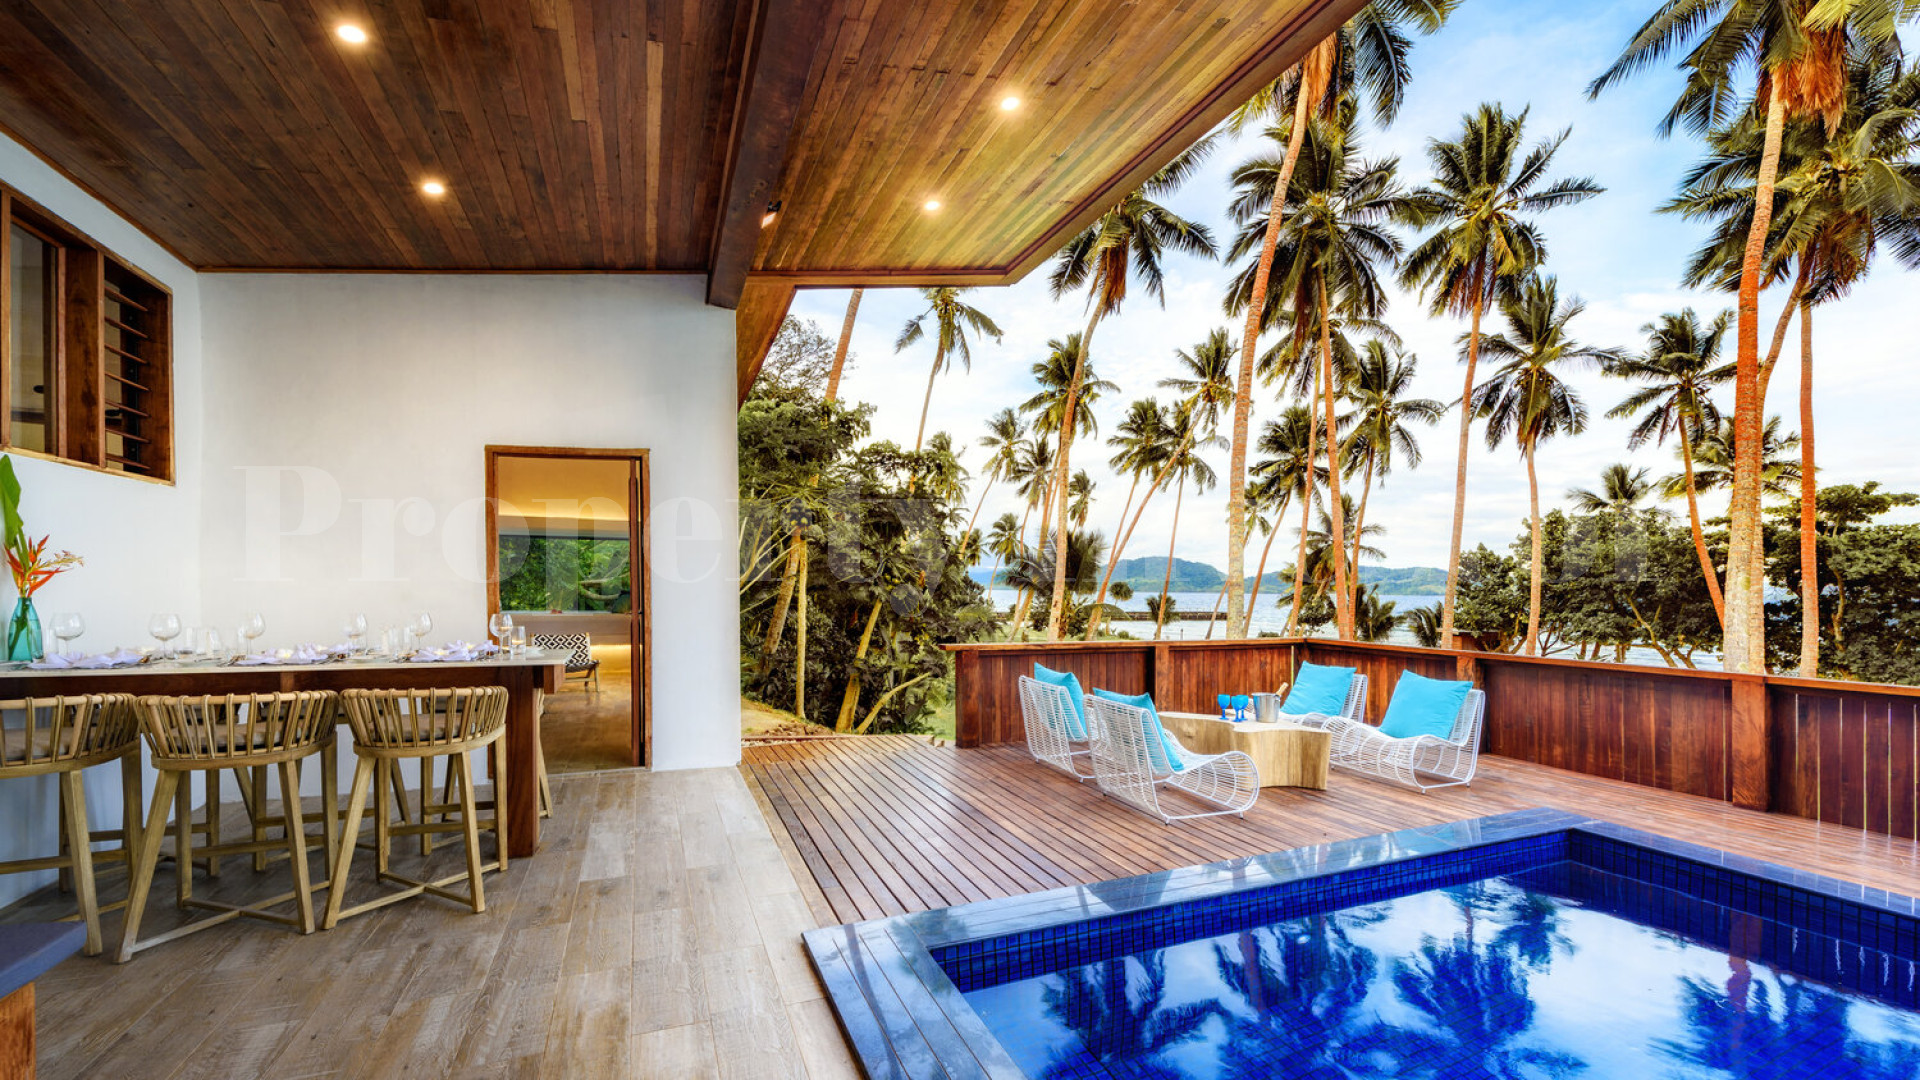 Продаётся обладатель наград островной бутик-отель с 8 виллами на Фиджи